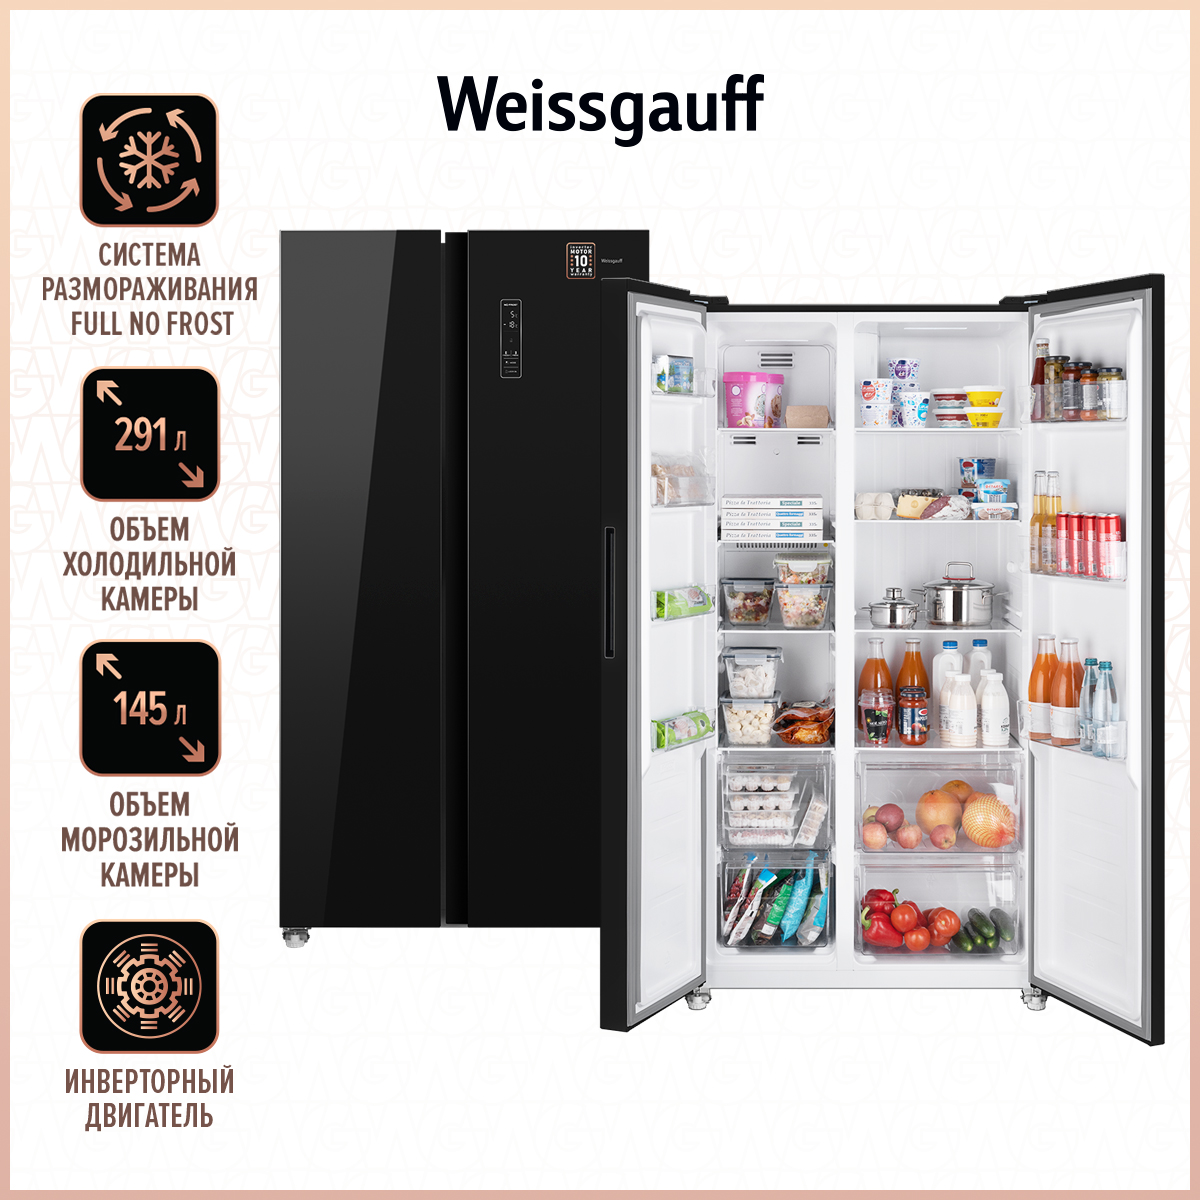 Холодильник Weissgauff WSBS 500 NFB черный многокамерный холодильник weissgauff wcd 687 nfbx nofrost inverter